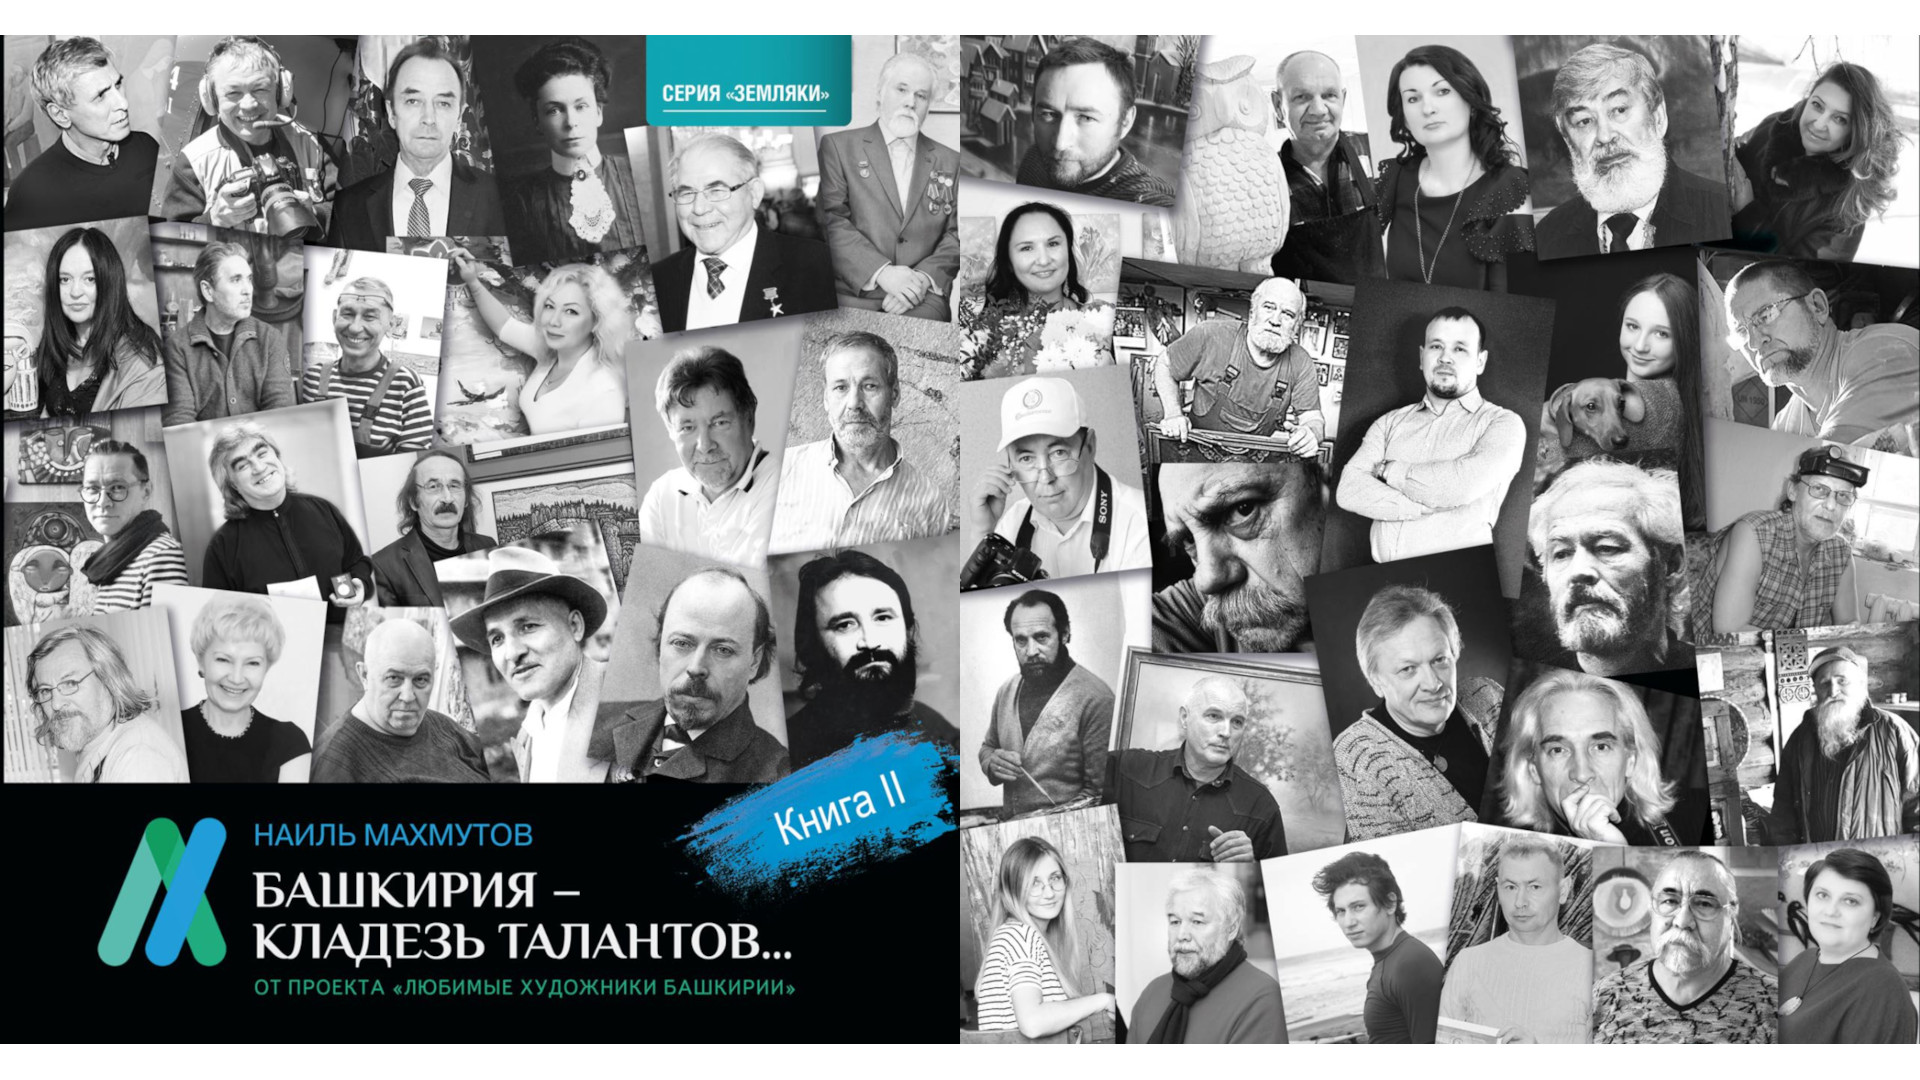 27 апреля состоится презентация второй книги проекта «Любимые художники Башкирии»